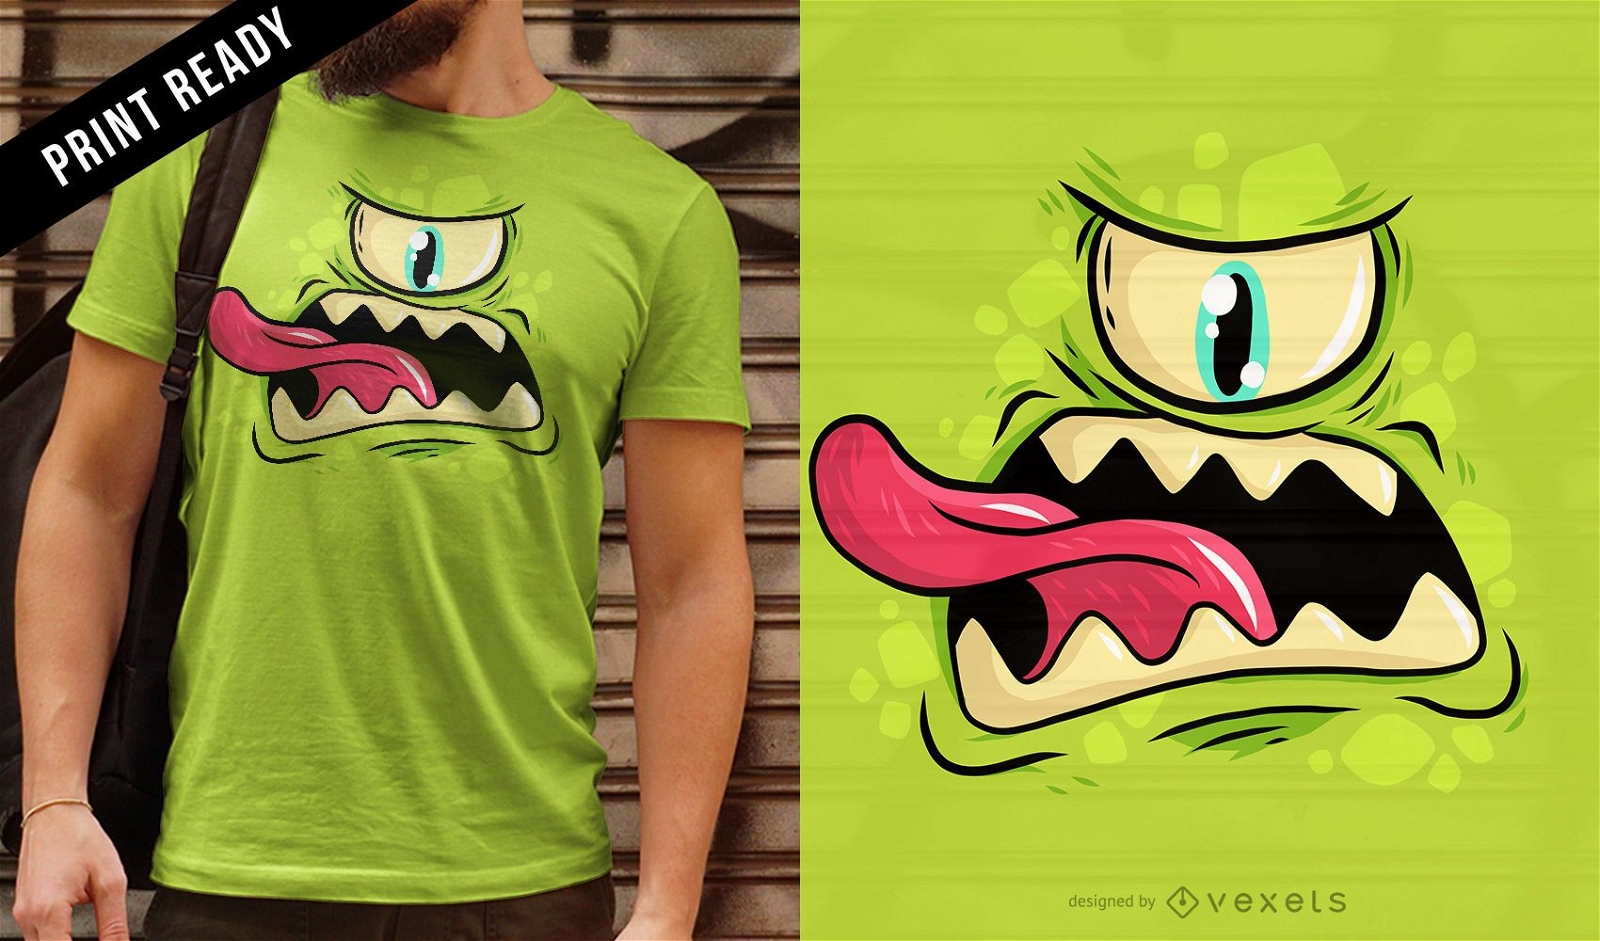 Cyclops monster t-shirt design